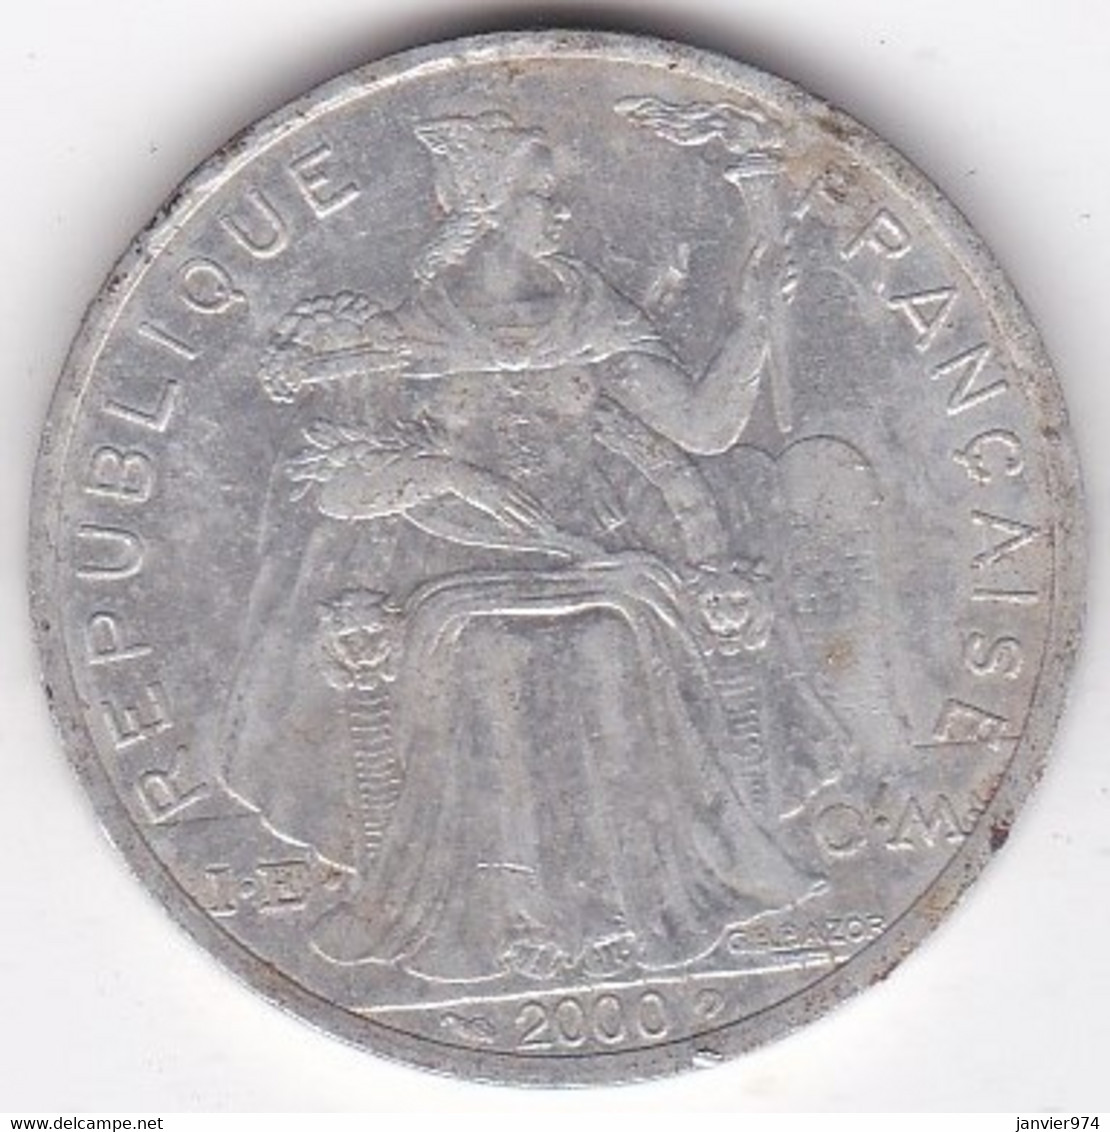 Polynésie Française . 5 Francs 2000, En Aluminium - Französisch-Polynesien